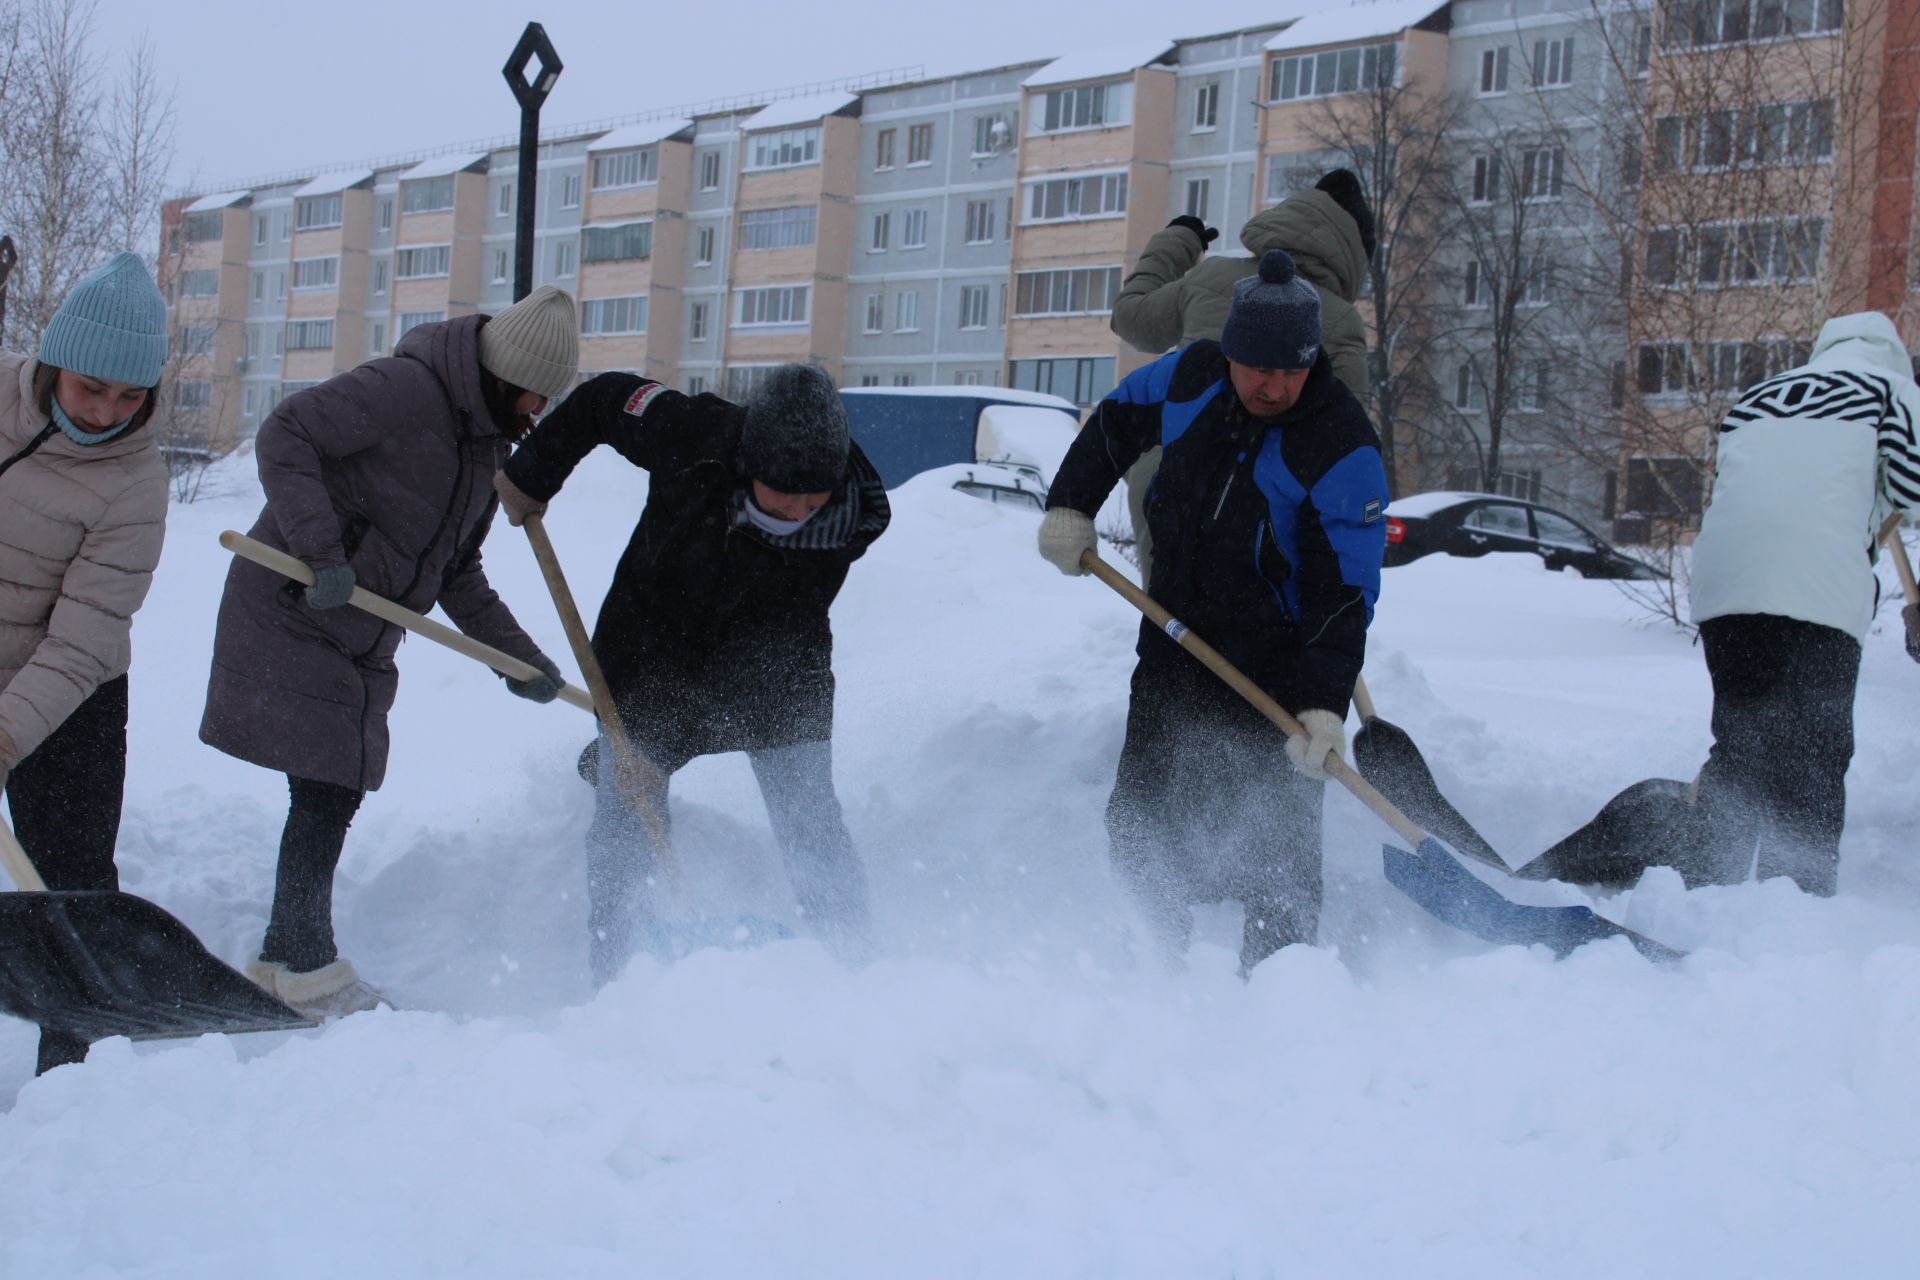 Представители Управления образования города Азнакаево организовали уборку снега на территории парка Победы